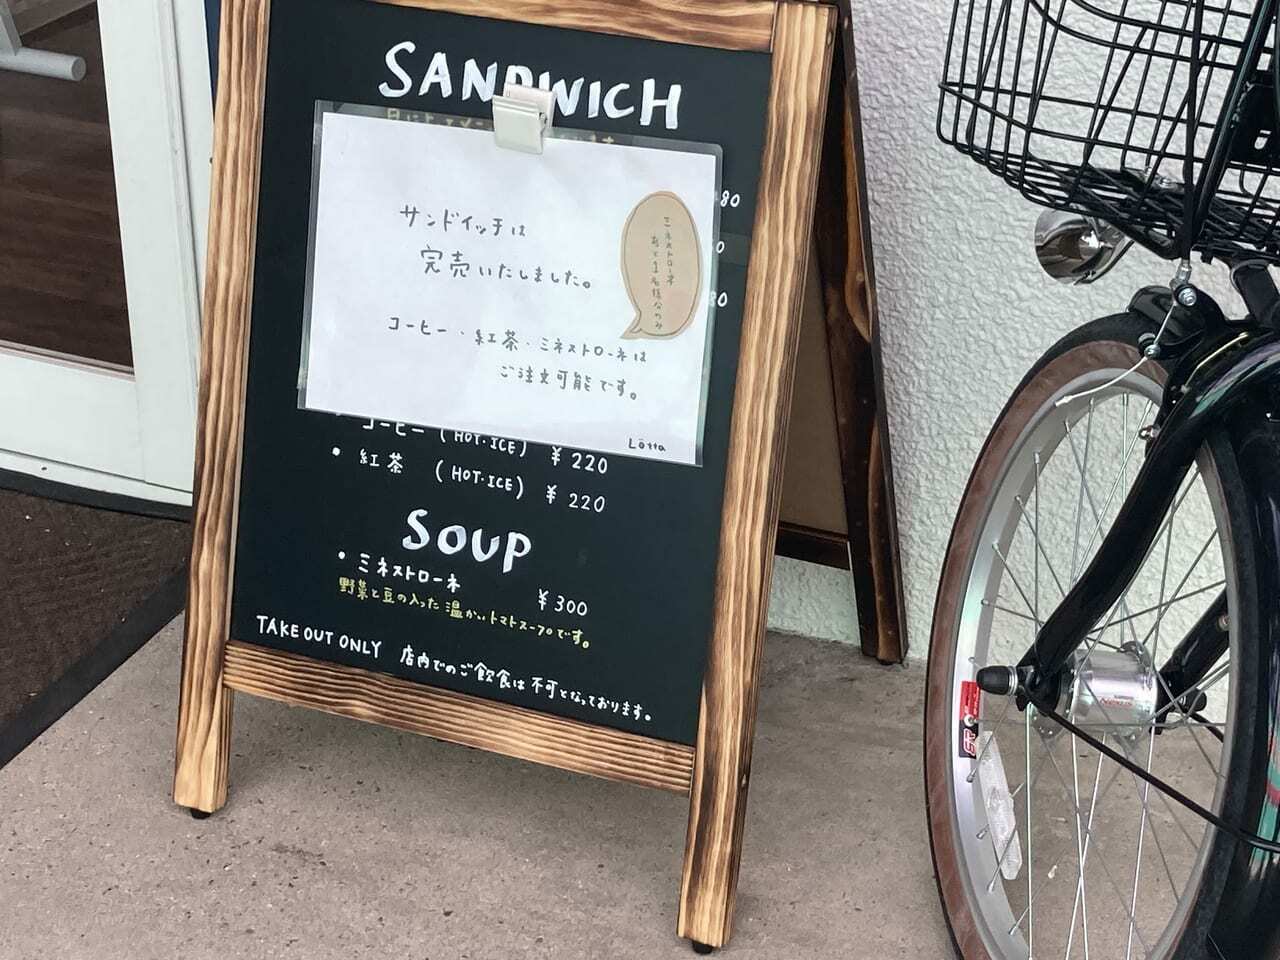 サンドイッチ完売でした